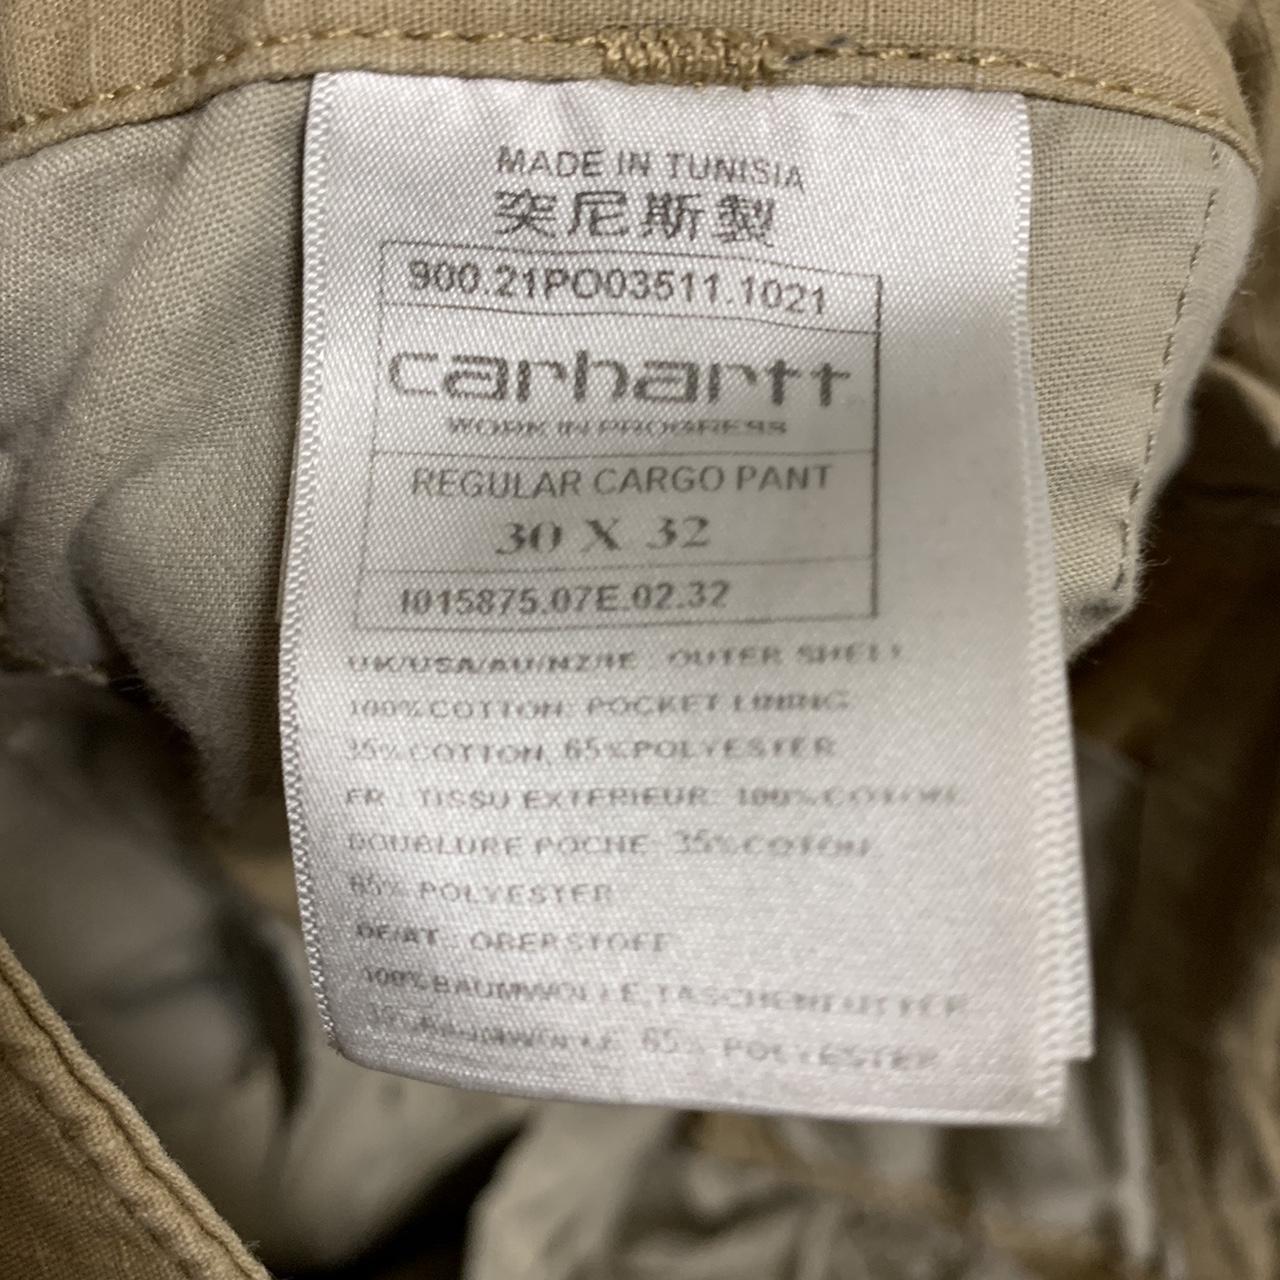 Cream carhatt cargo pants barley worn, selling... - Depop